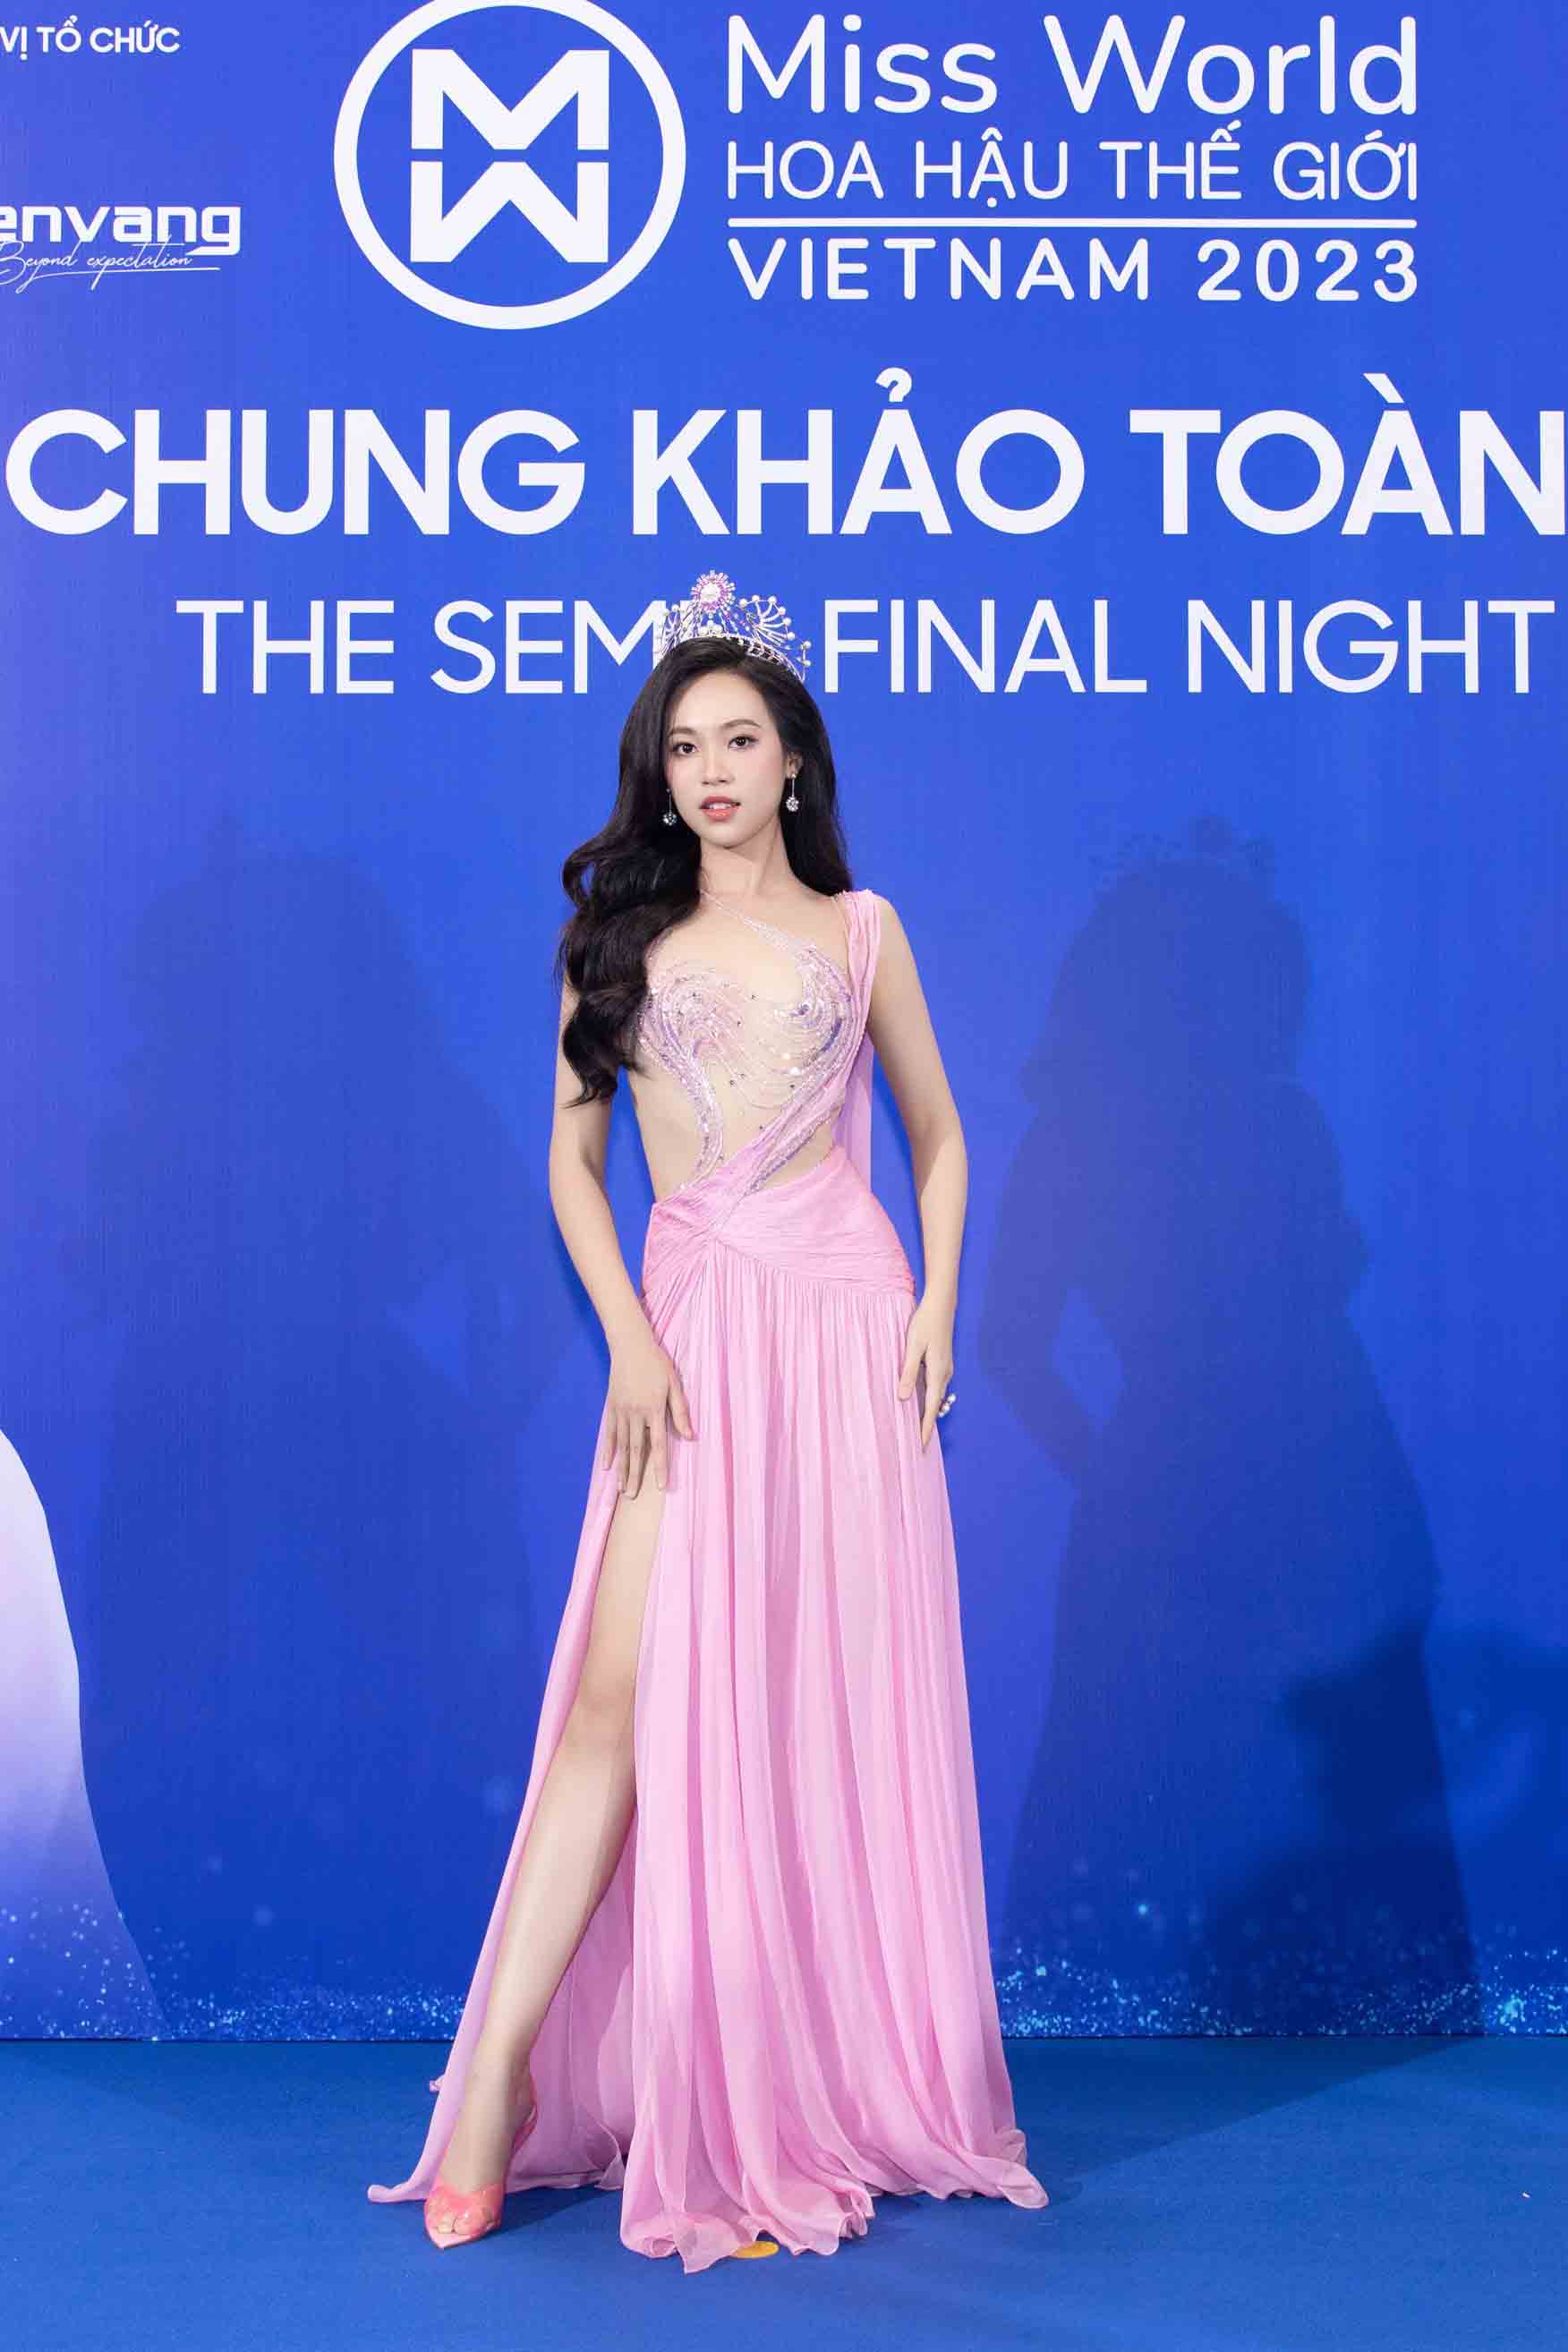 Tiếp đó, nhan sắc ngọt ngào của Á hậu 1 Hoa hậu Việt Nam 2022 Trịnh Thuỳ Linh gây thương nhớ đến các người hâm mộ sắc đẹp.